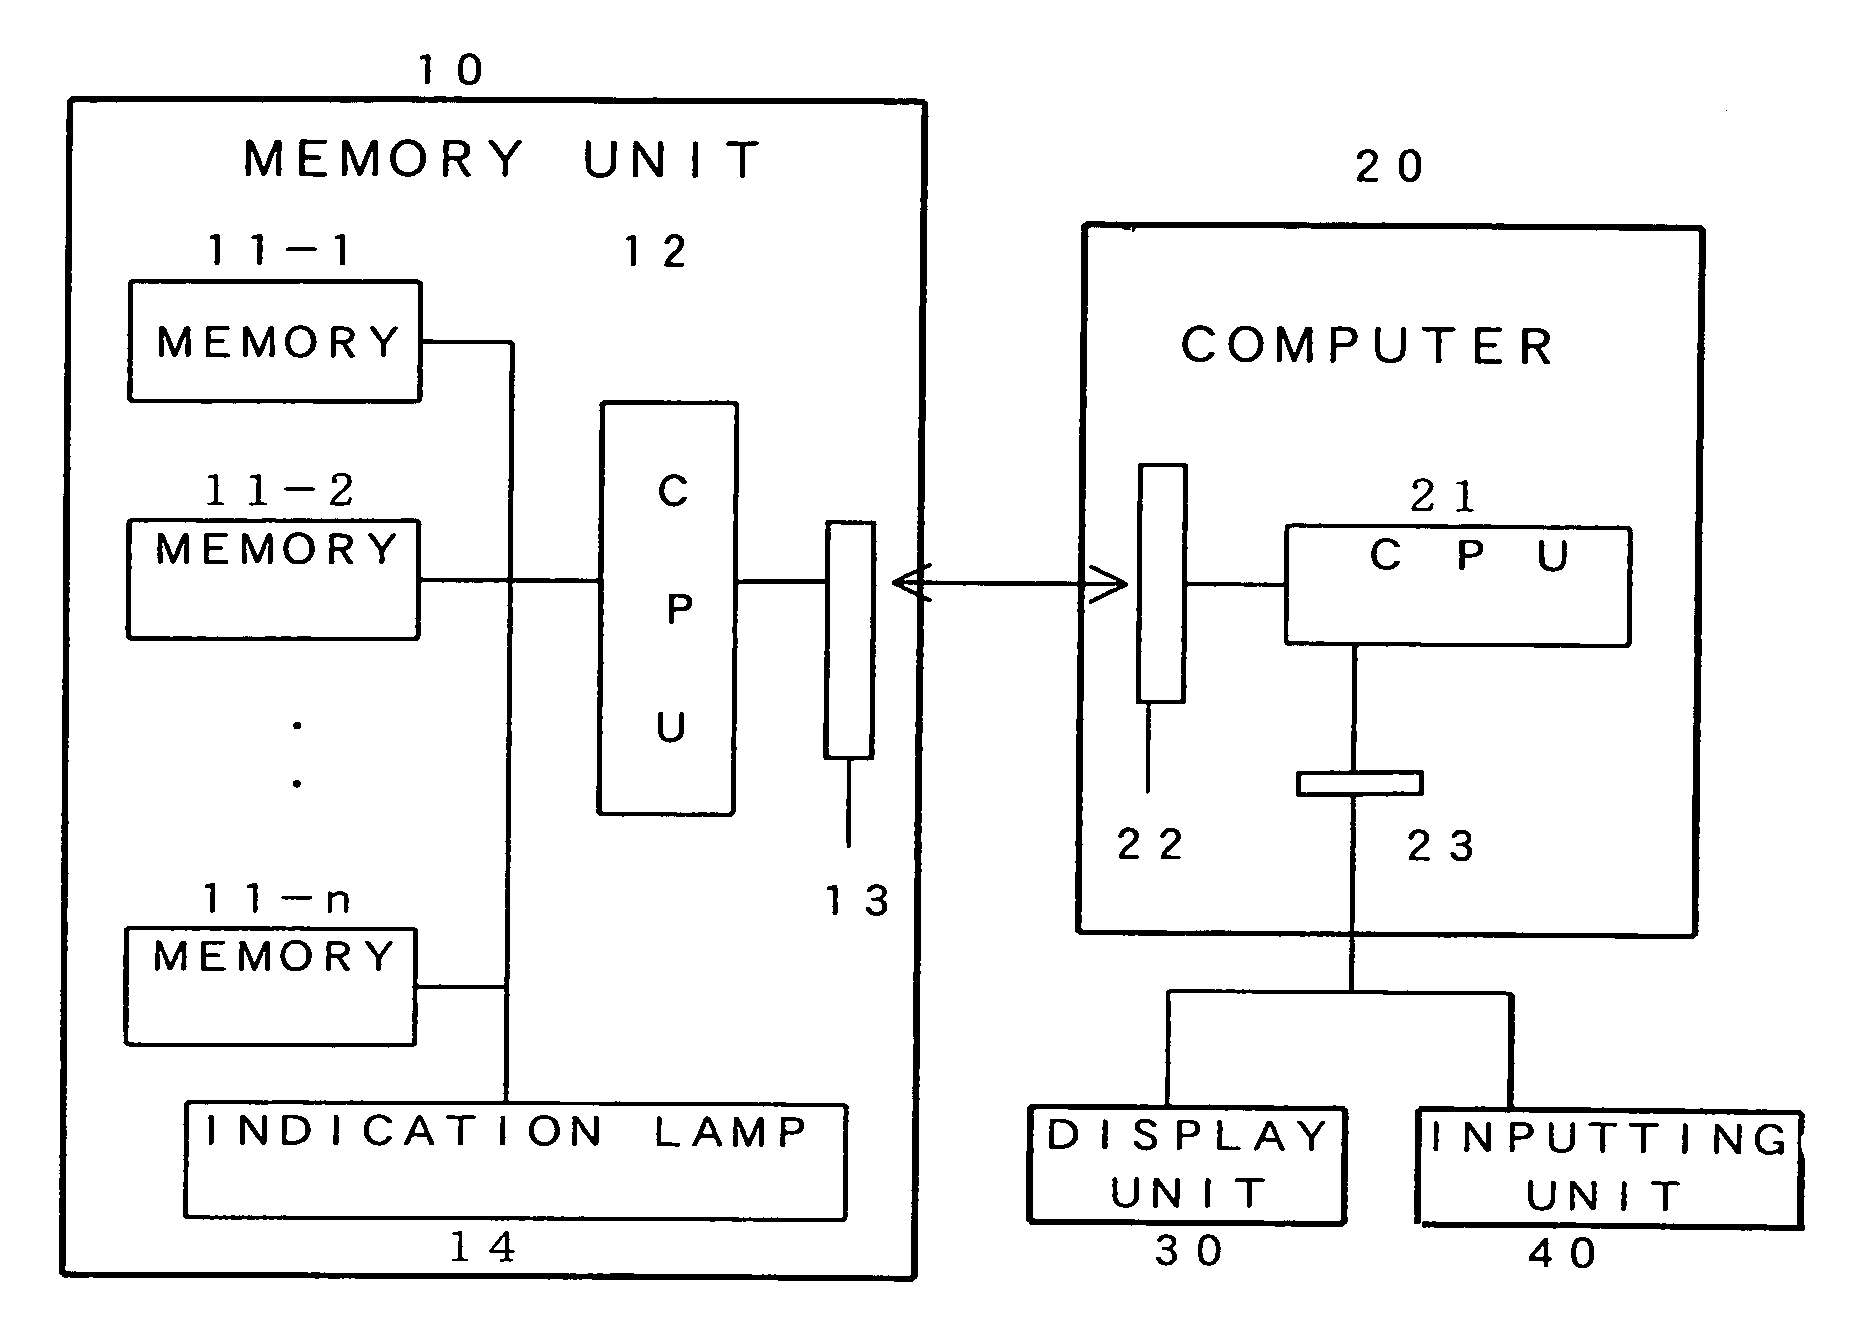 Memory unit having memory status indicator